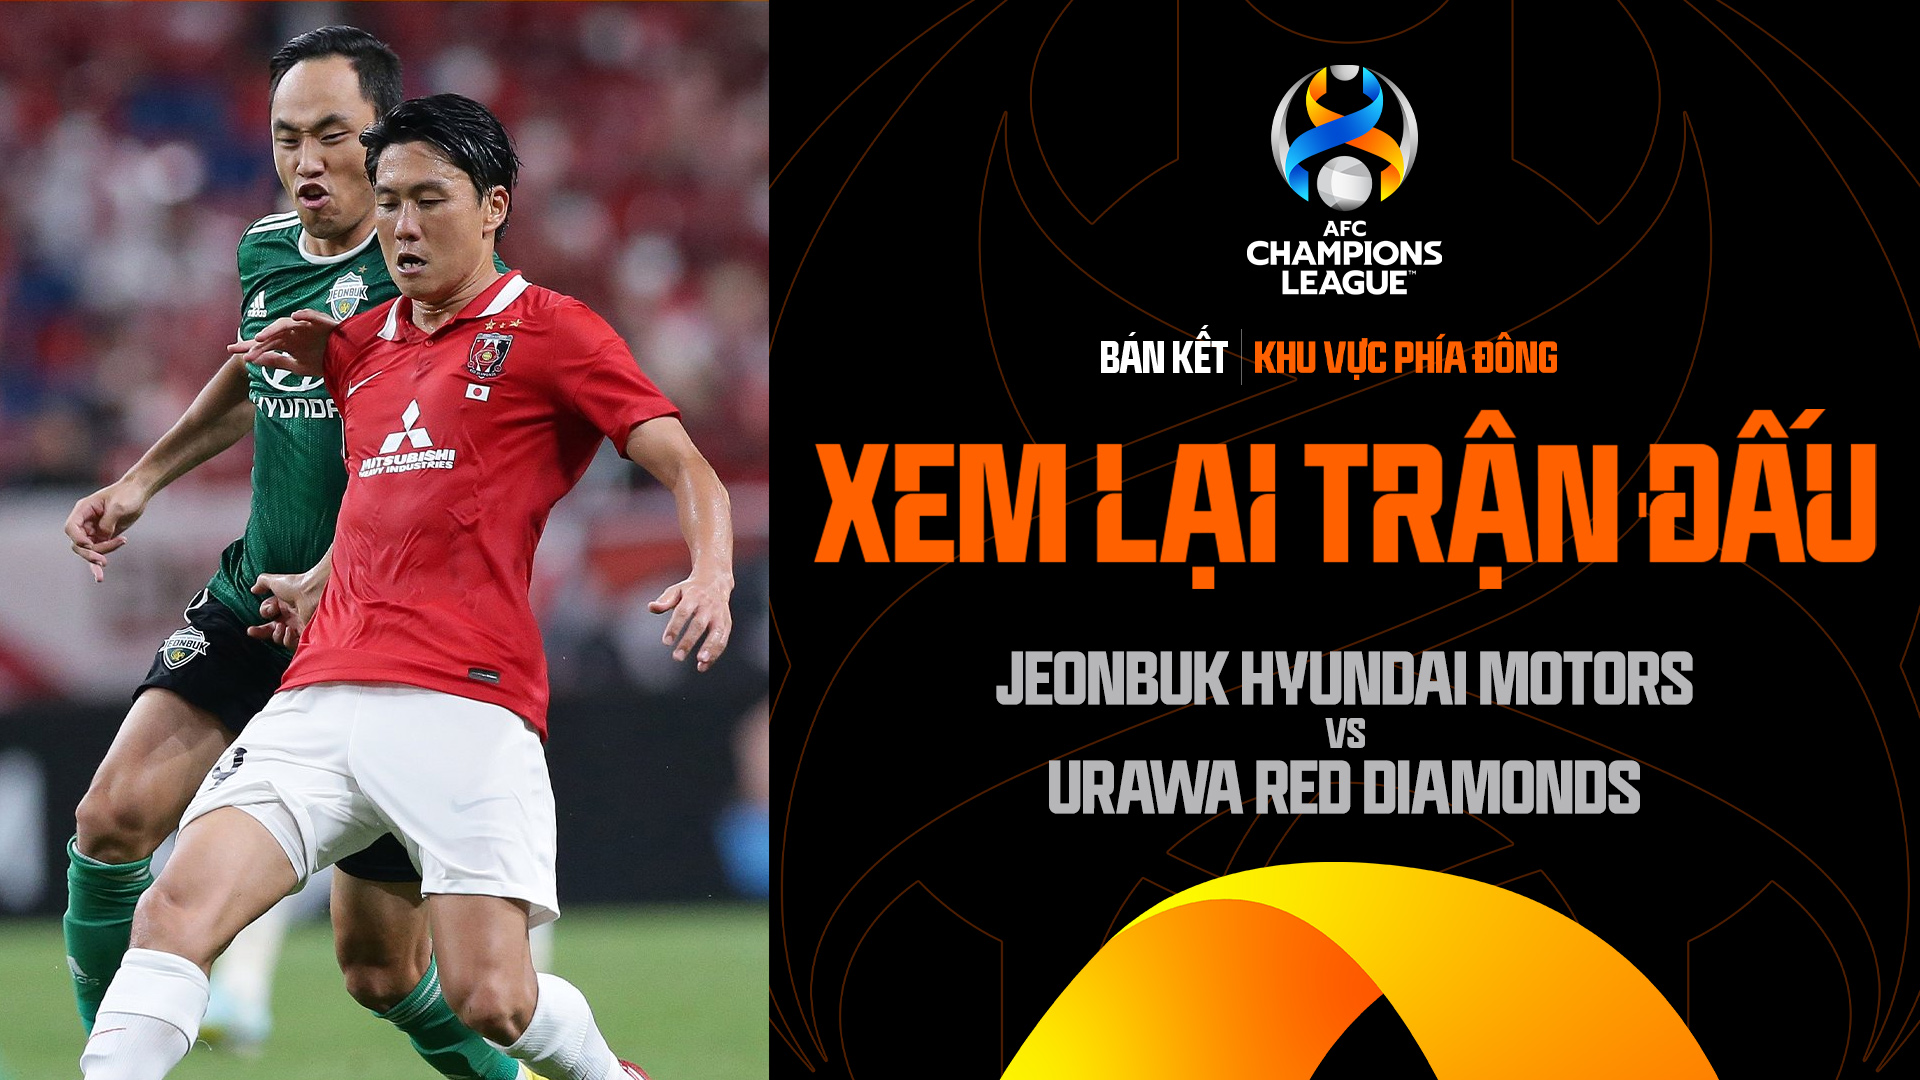 Jeonbuk Hyundai Motors - Urawa Red Diamonds - AFC Champions League